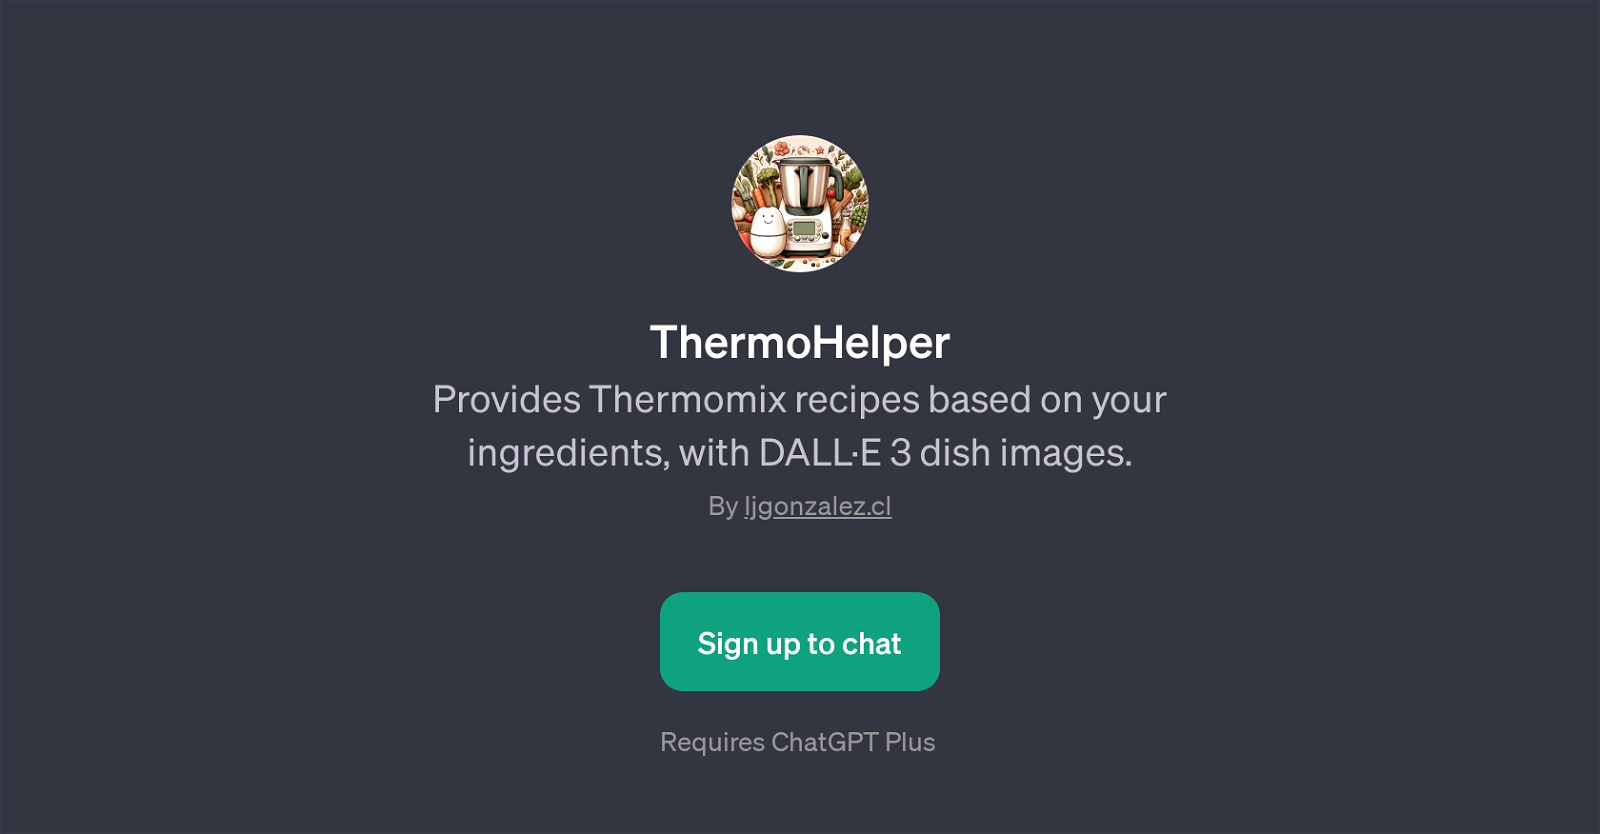 ThermoHelper website